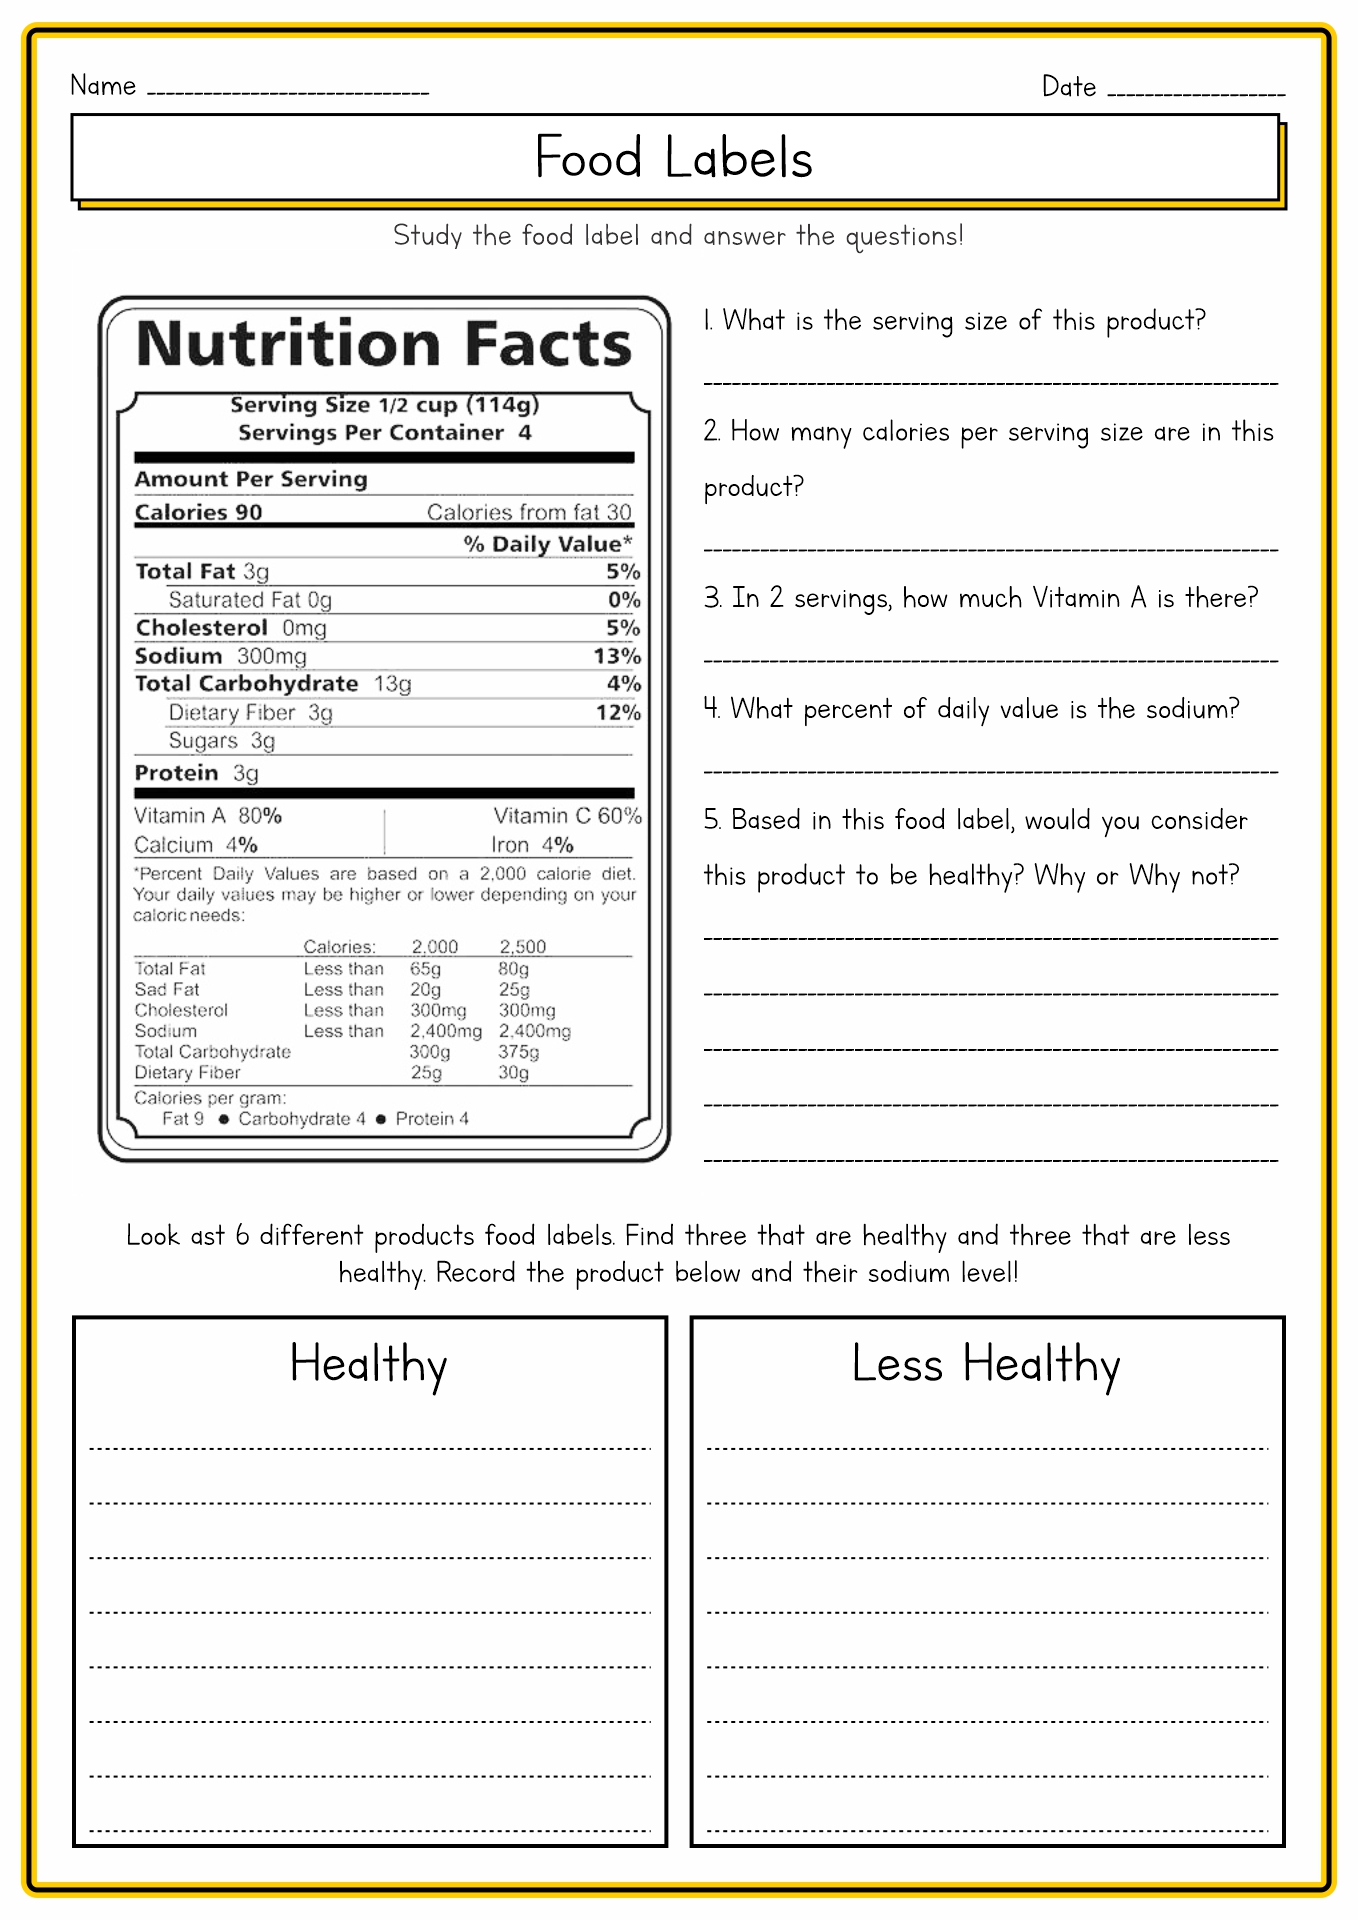 Food Label Worksheet Image